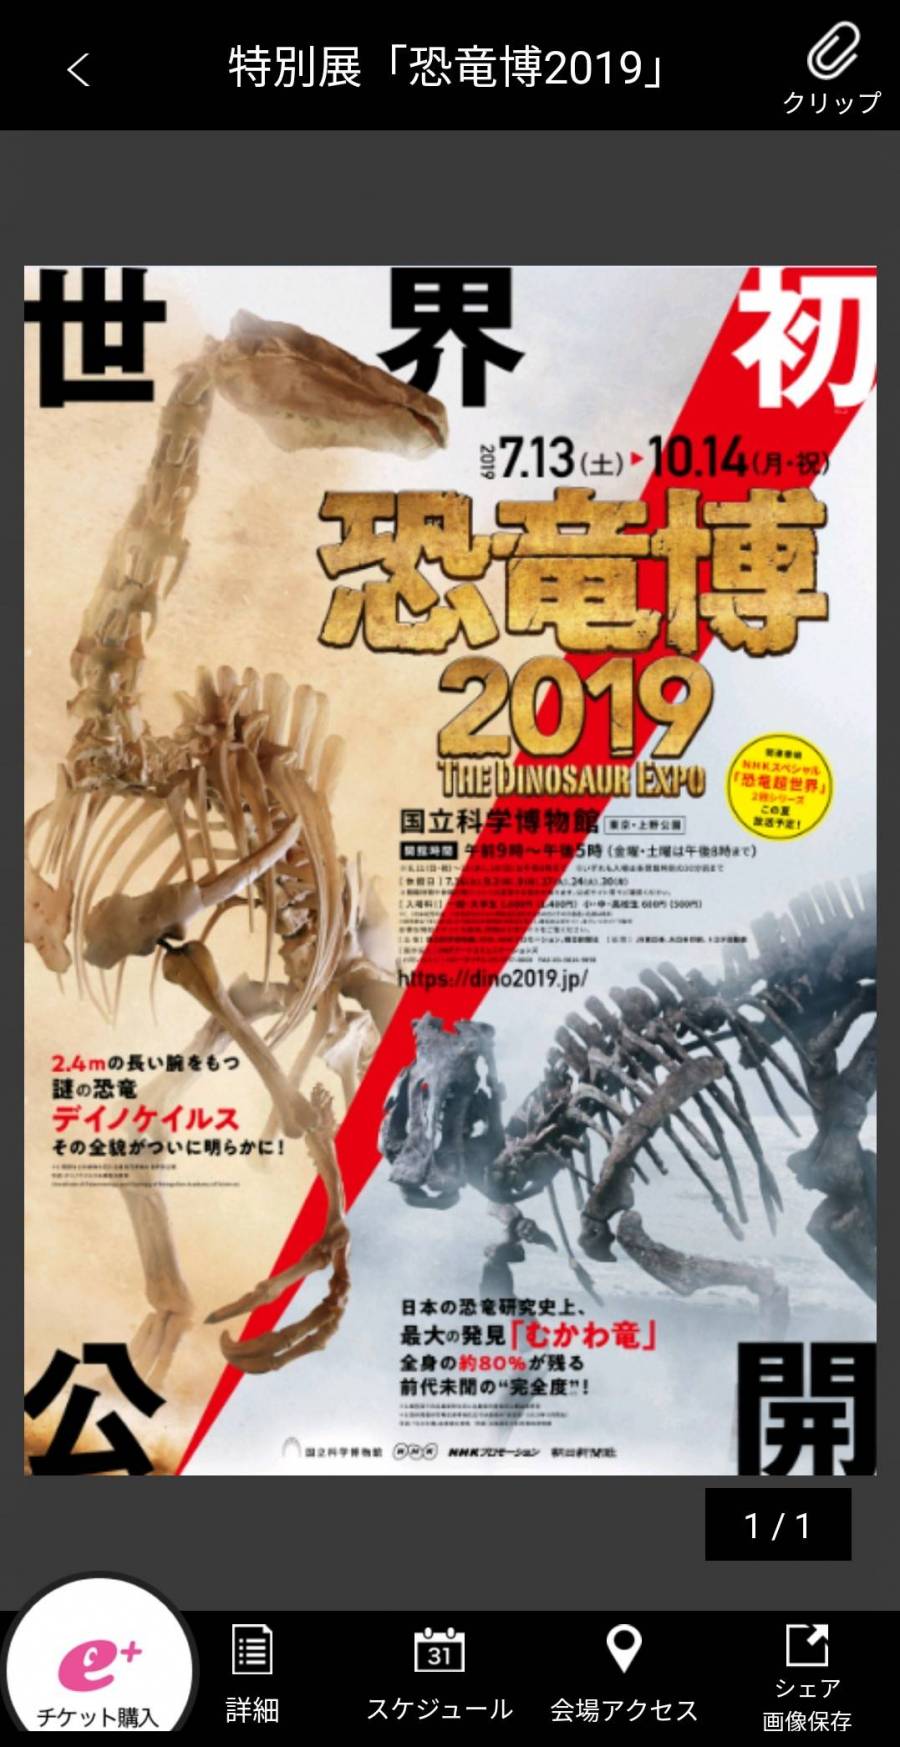 恐竜博2019　The Dinosaur Expo 2019のチラシ